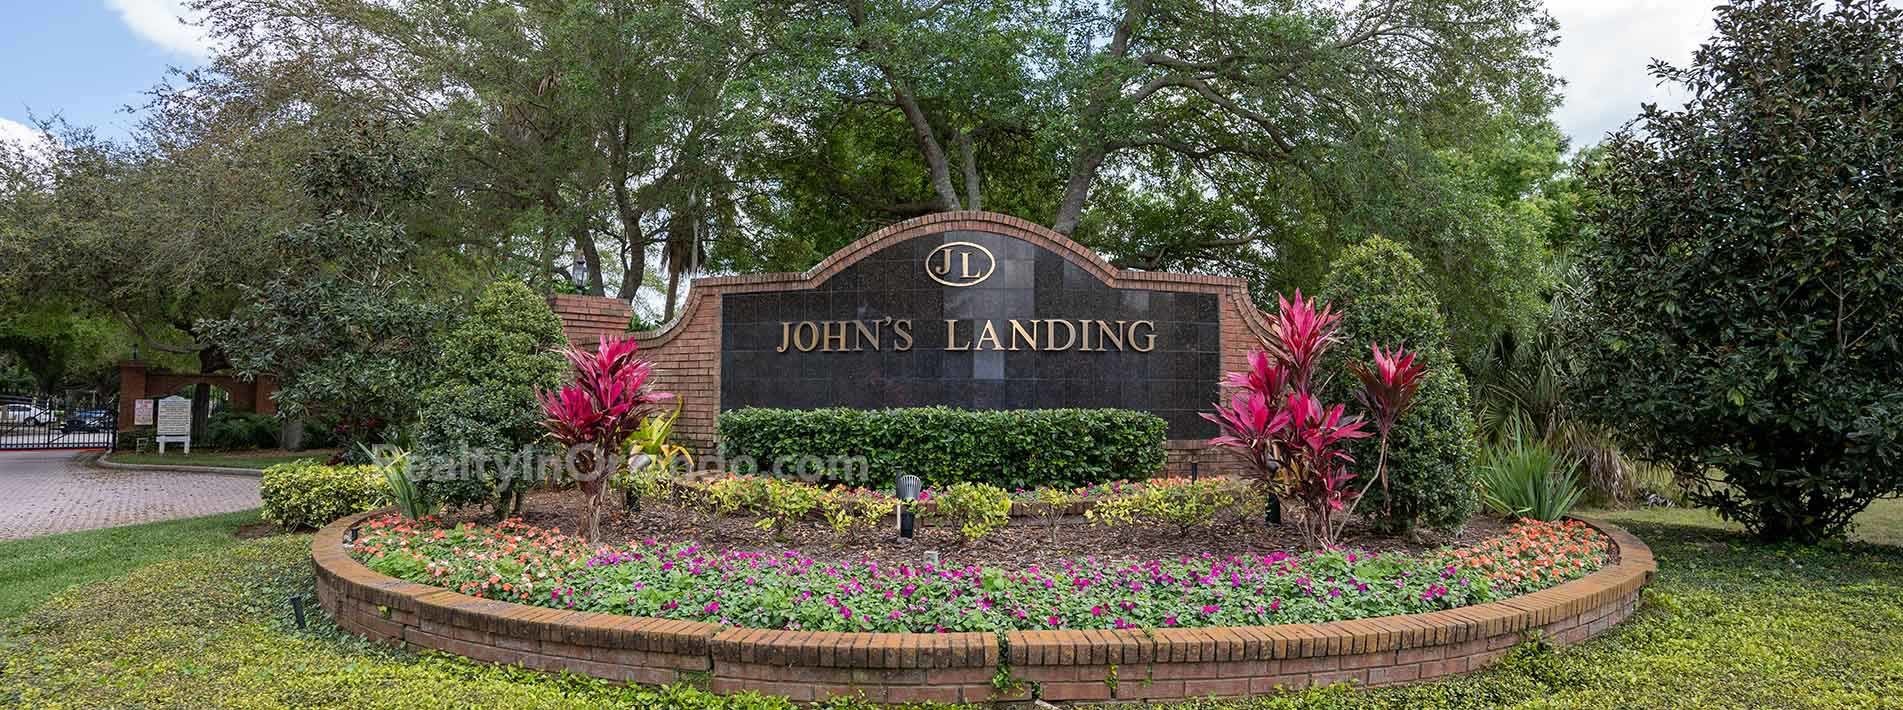 John's Landing Winter Garden Real Estate